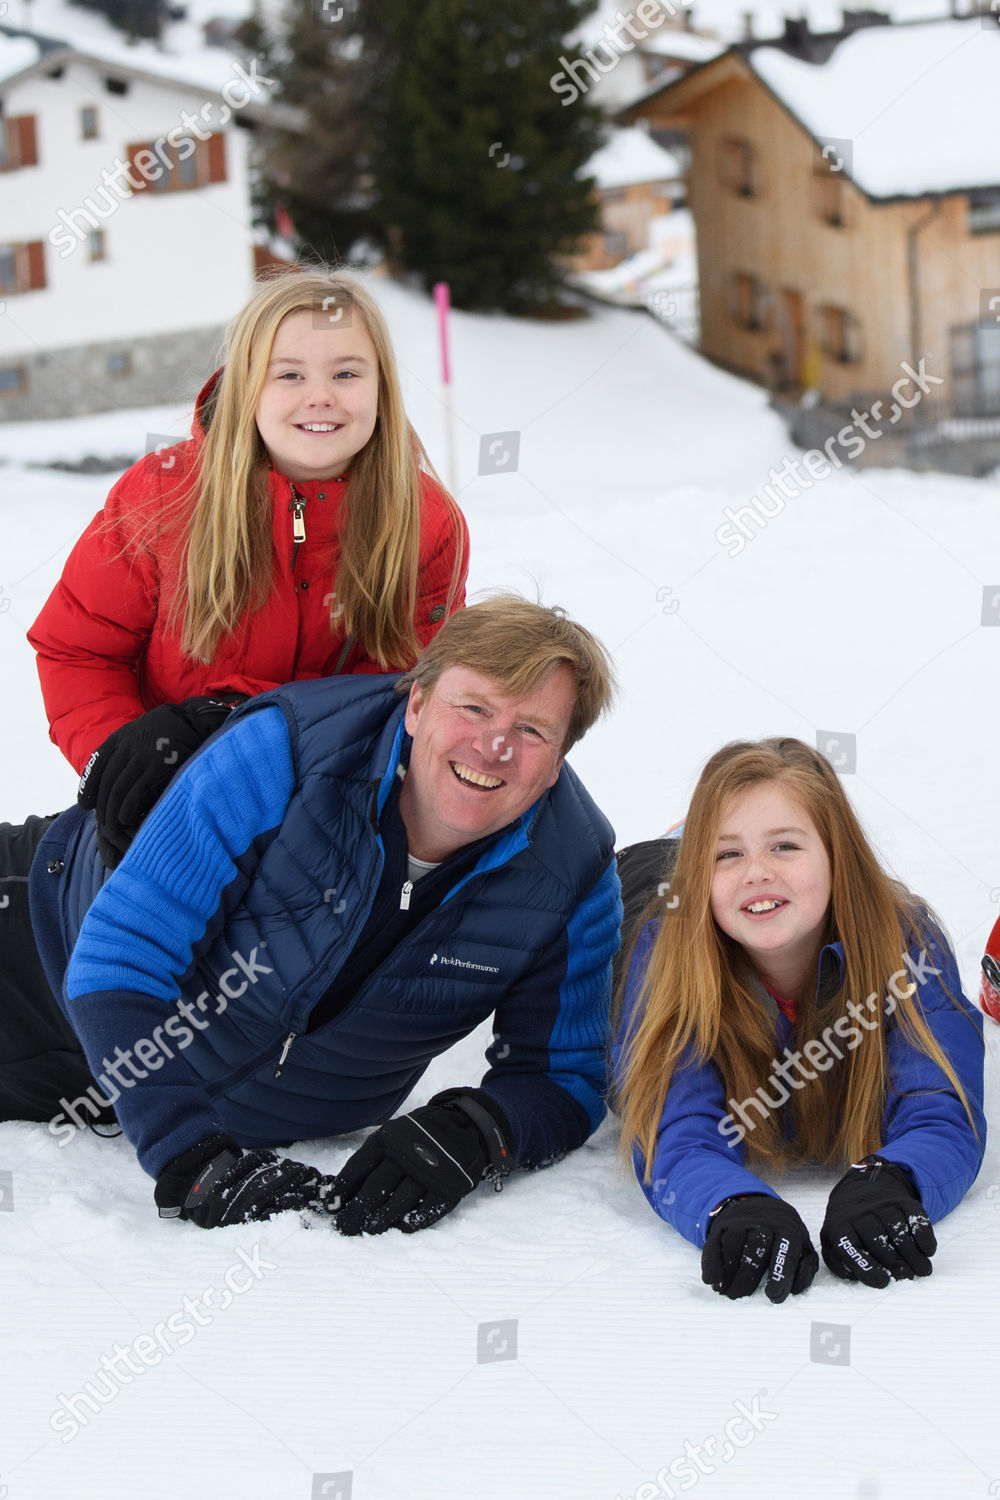 dutch-royals-winter-holiday-photocall-lech-austria-shutterstock-editorial-8436478ca.jpg